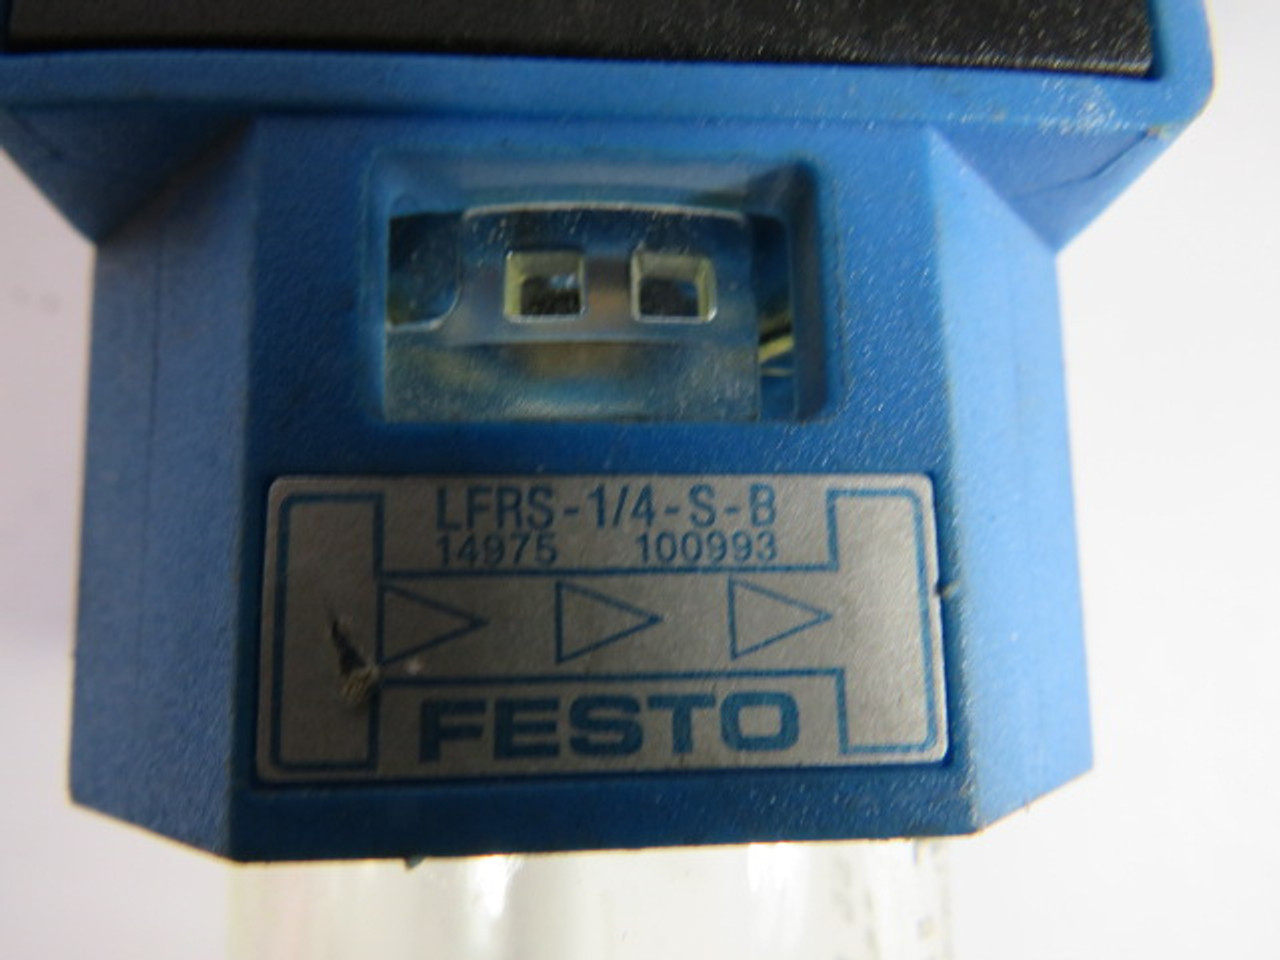 Festo LFRS-1/4-S-B Filter Regulator USED